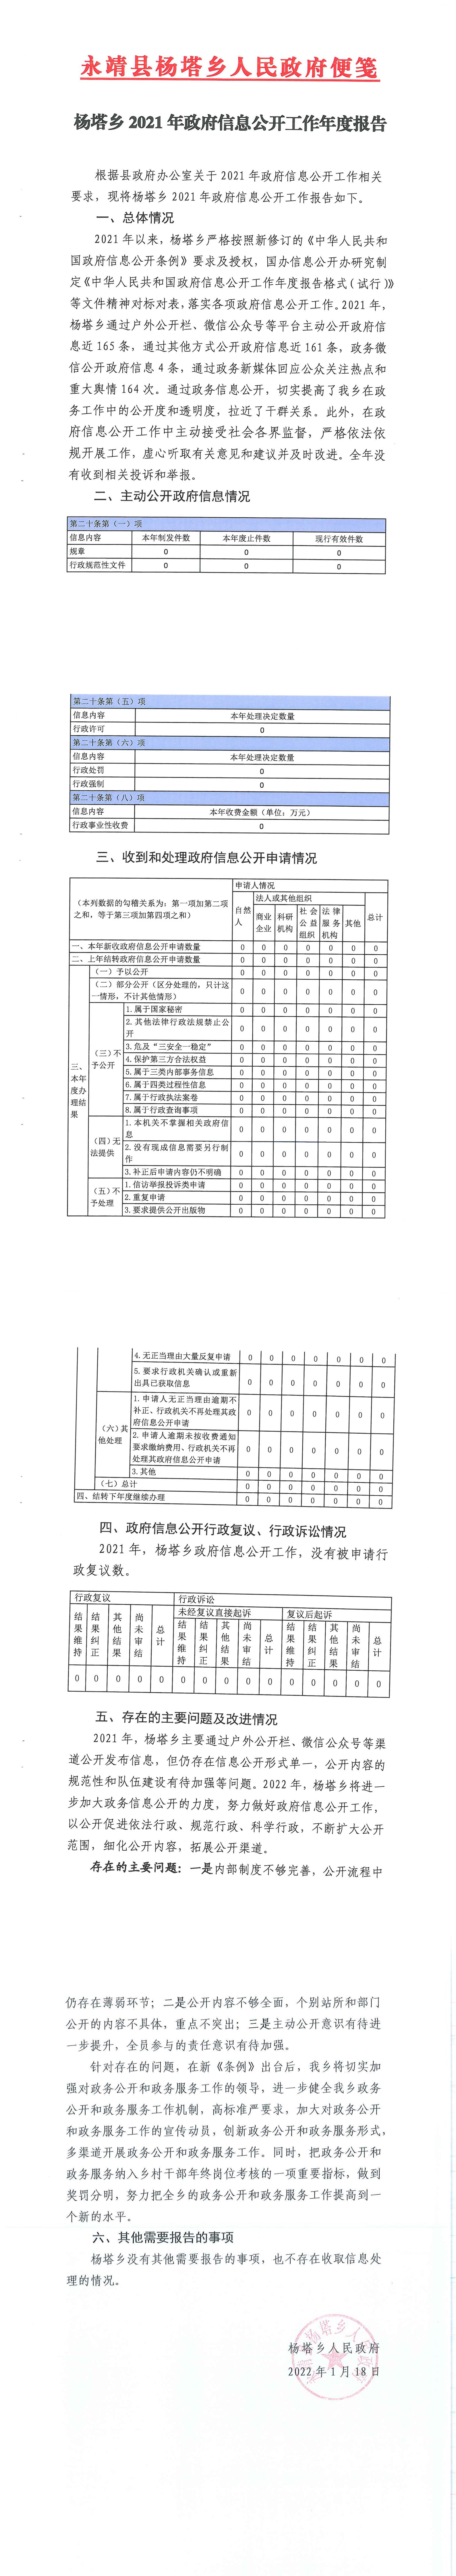 2021年度杨塔乡政府信息公开工作报告.jpg